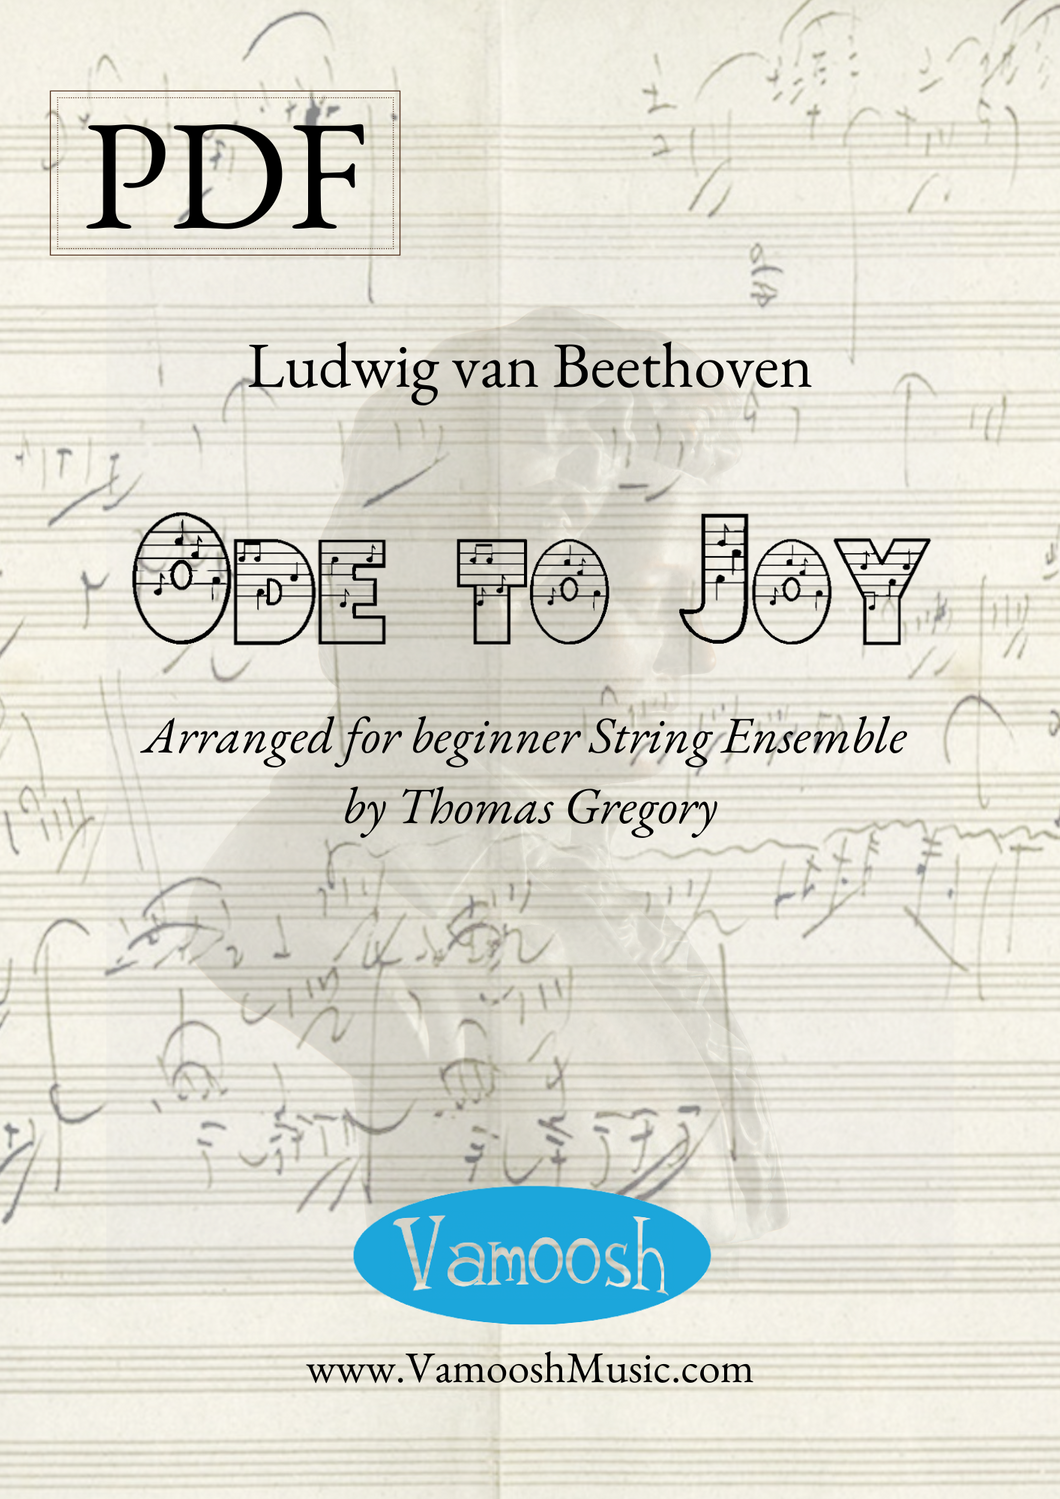 Beethoven Ode to Joy for Beginner String Ensemble